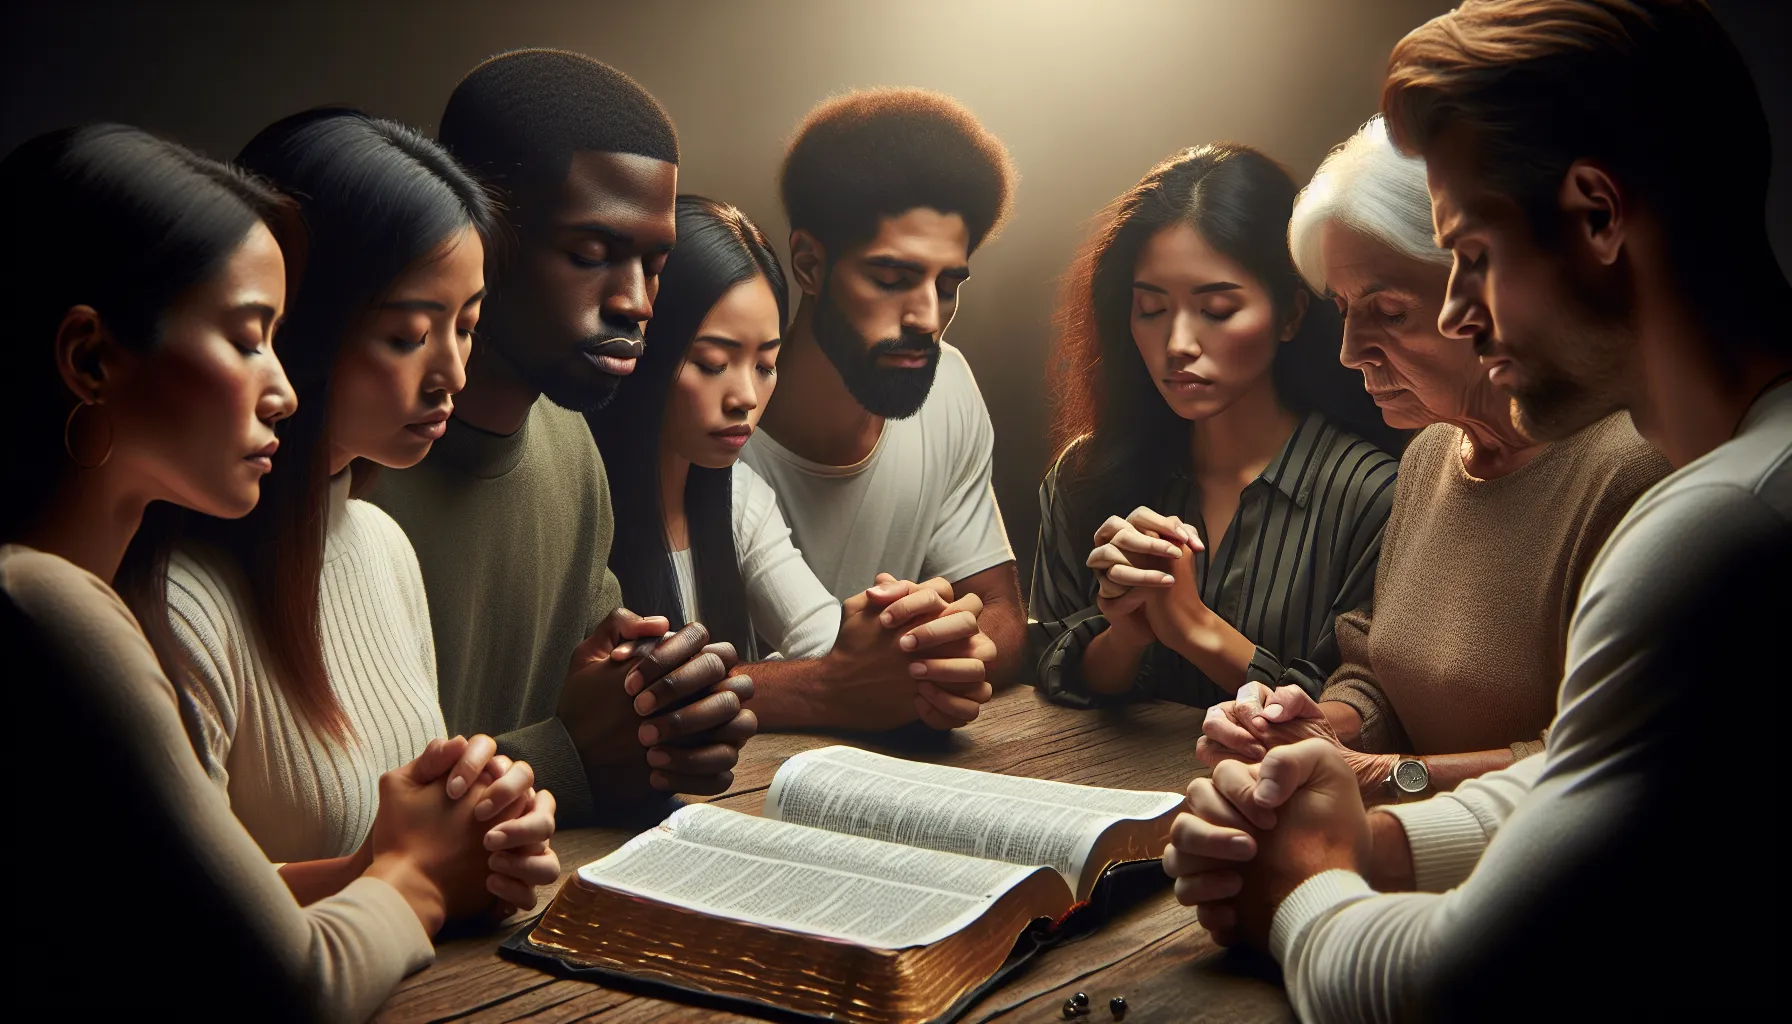 Imagen ilustrativa de un grupo de personas en oración alrededor de una Biblia abierta.